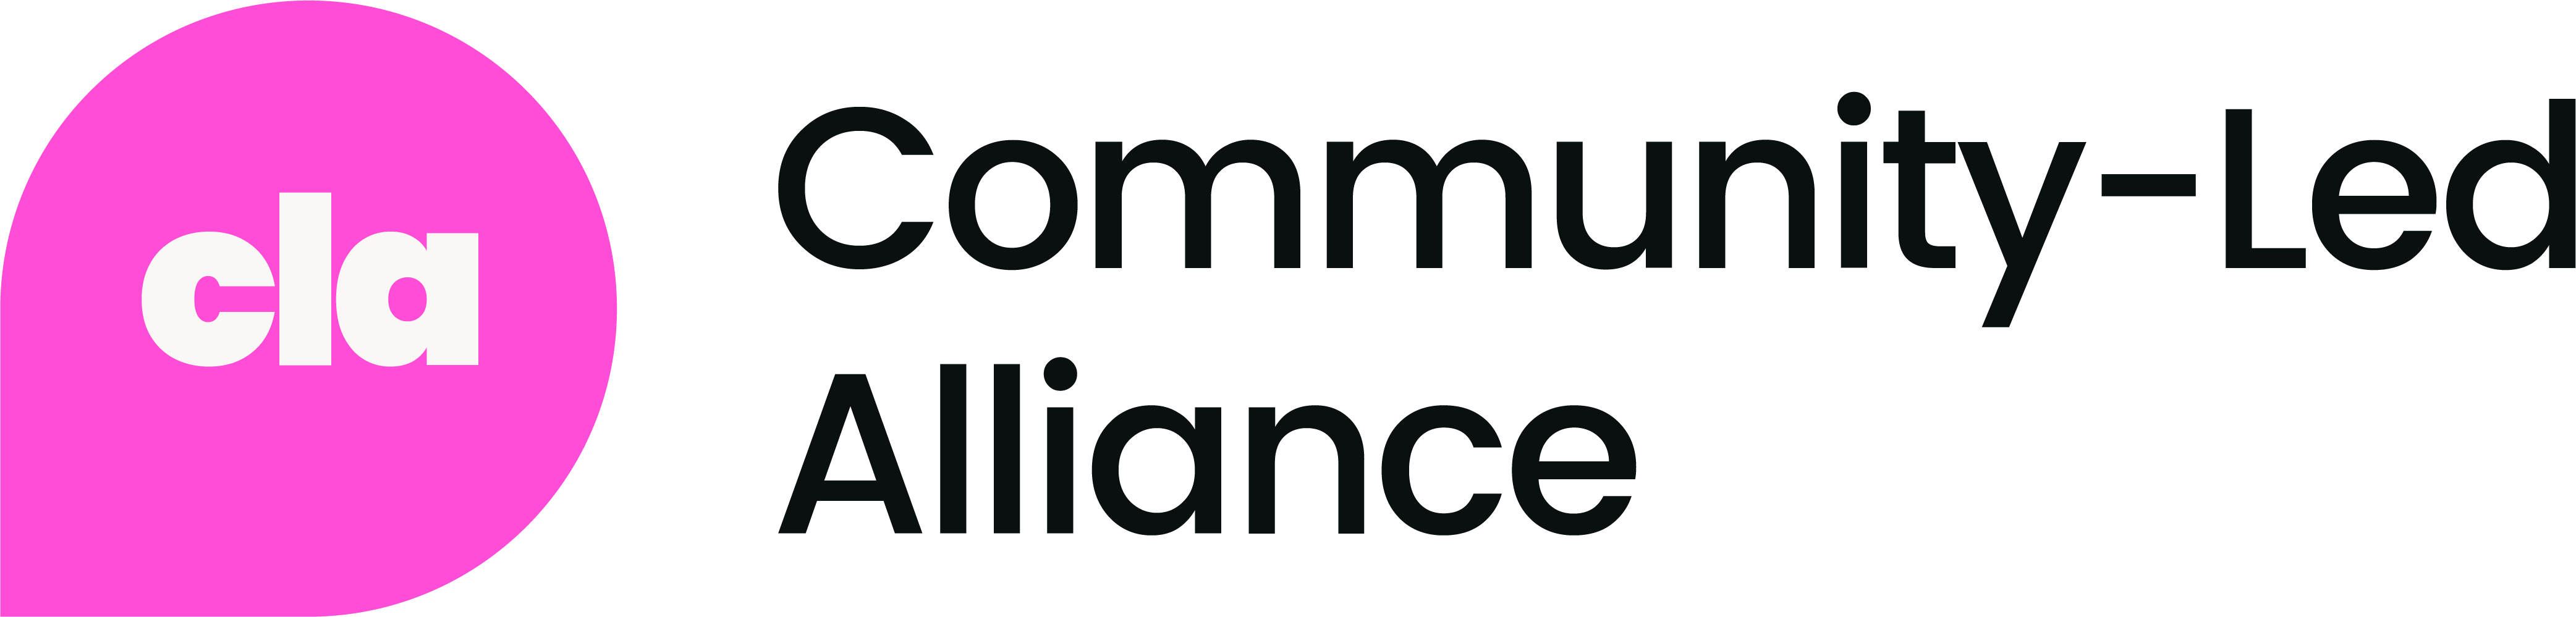 Community-Led Alliance logo